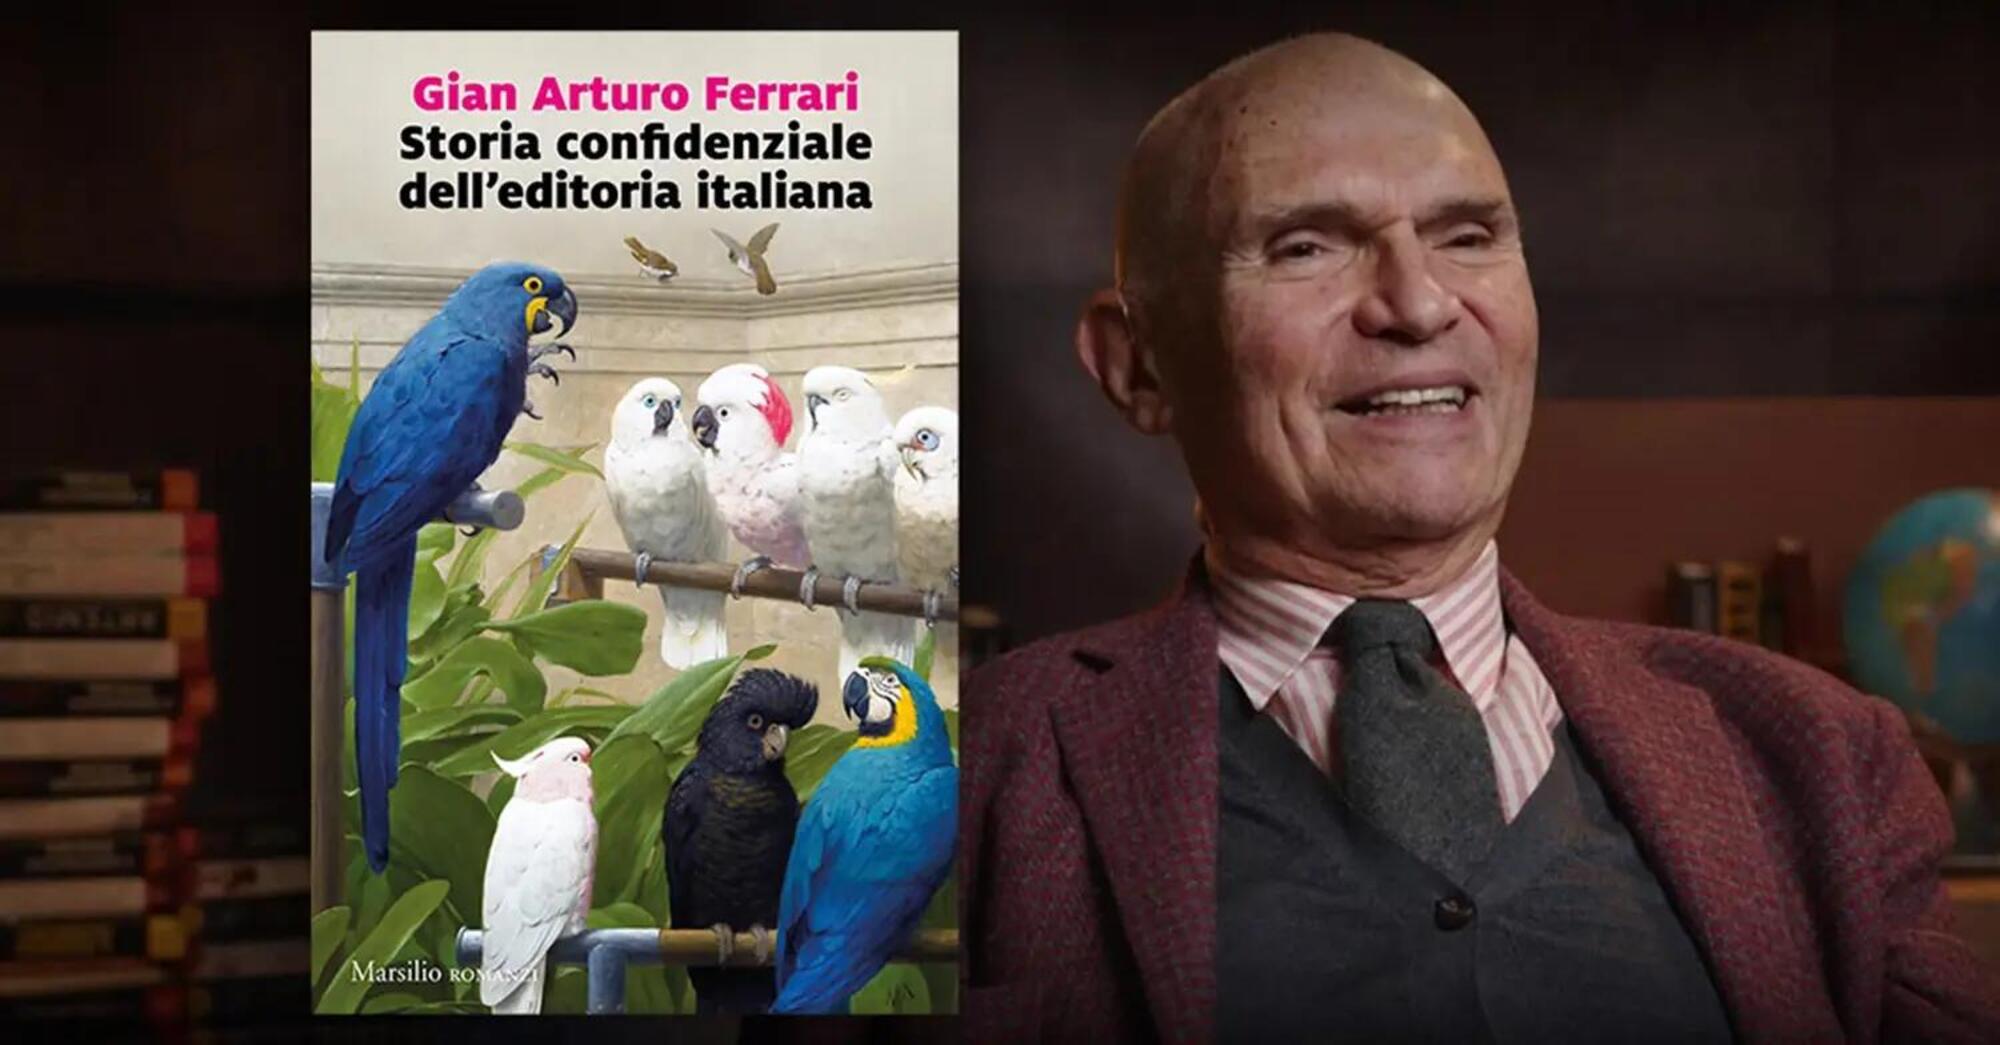 Storia confidenziale dell&rsquo;editoria italiana di Gian Arturo Ferrari